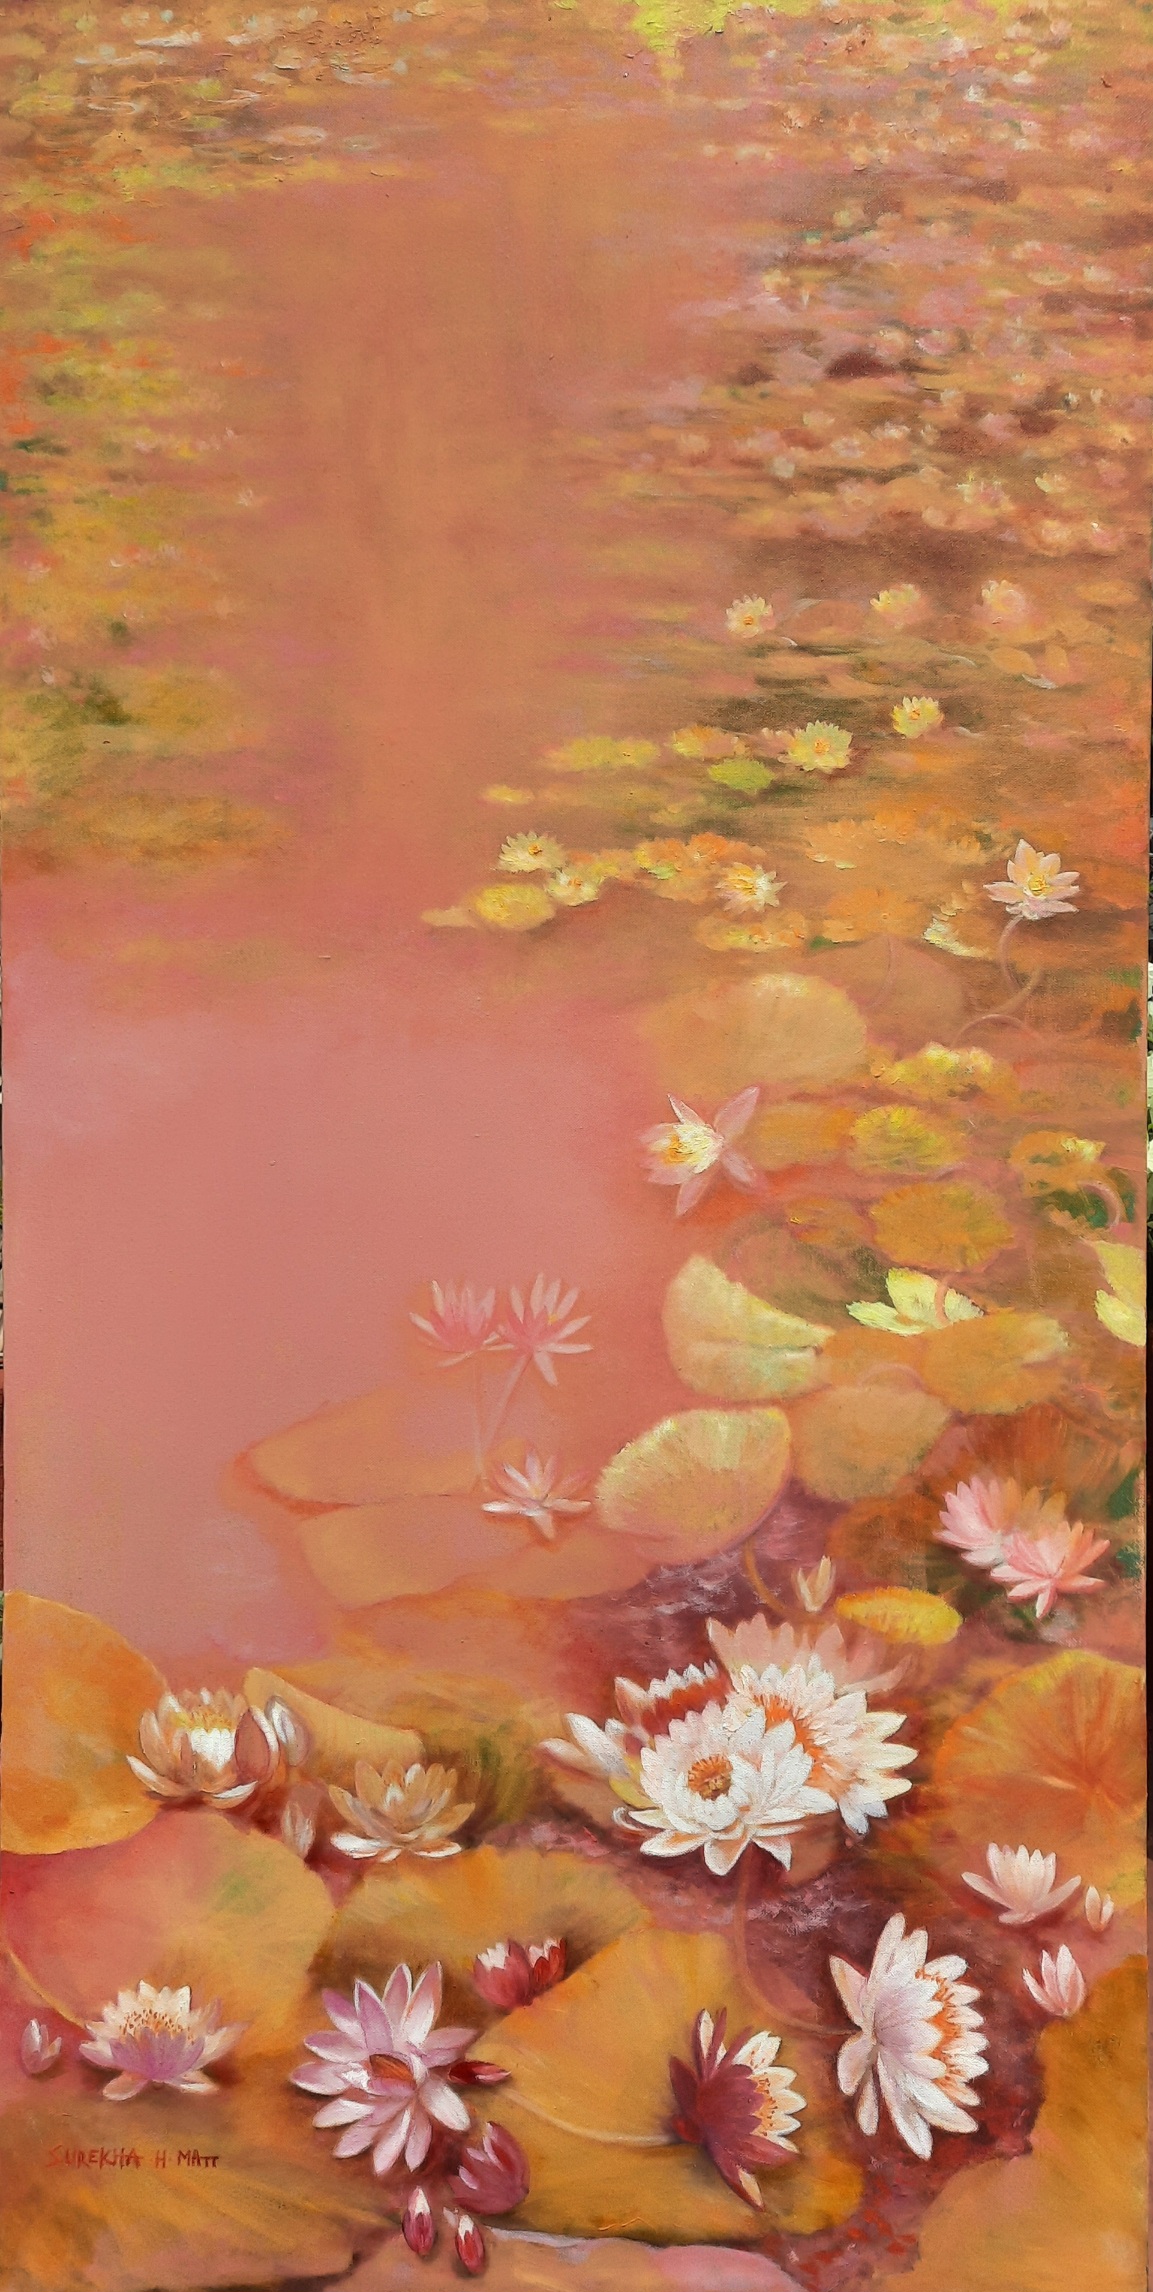 Pink Lotus Pond